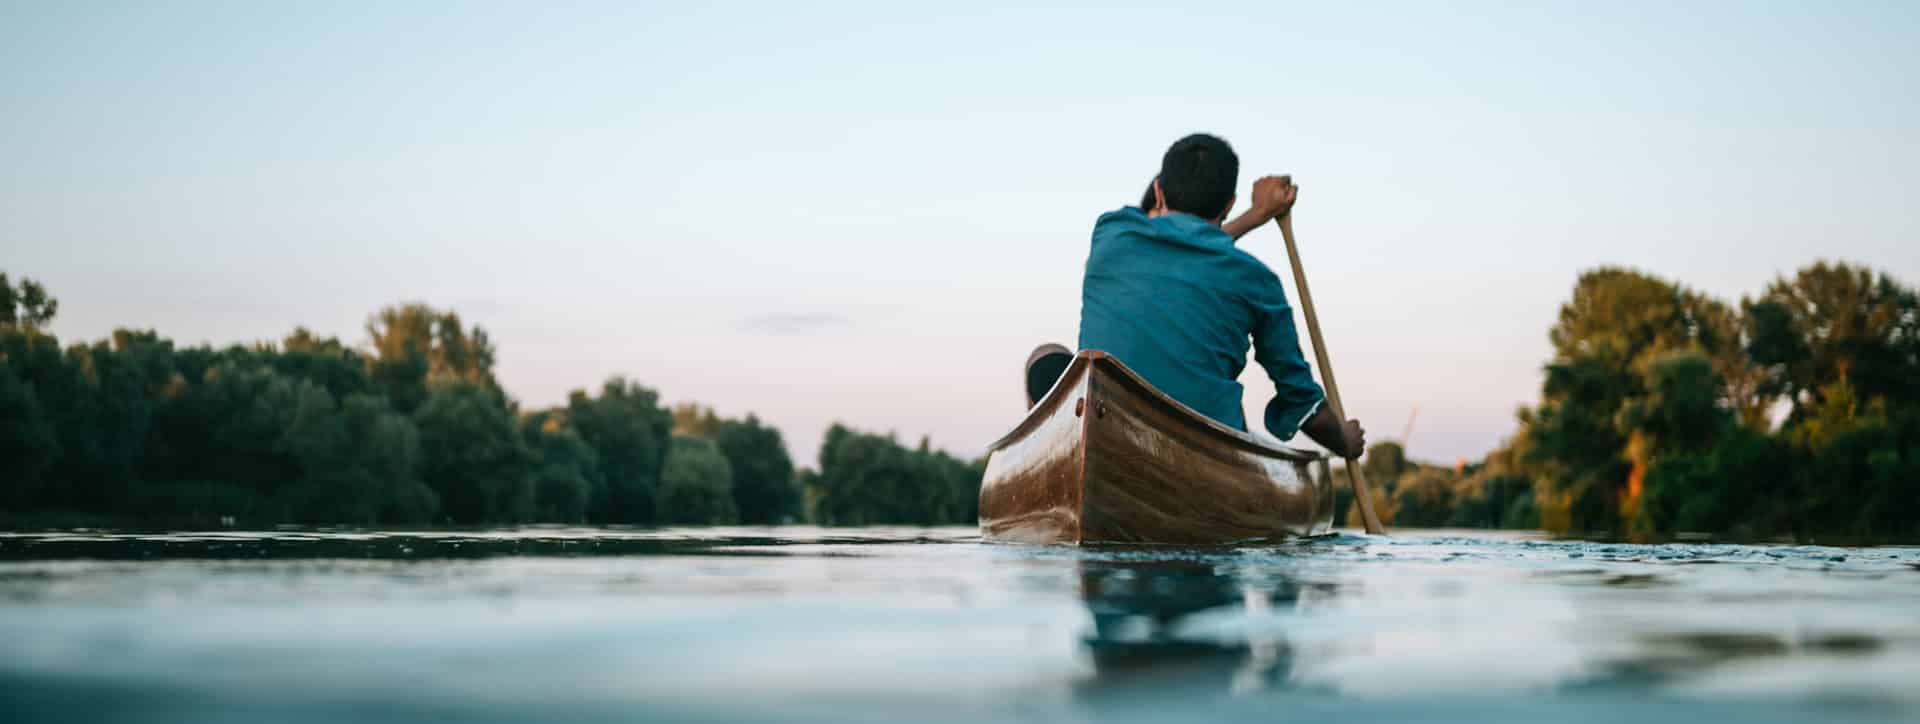 Bild: Pärchen im Kanu auf einem See.